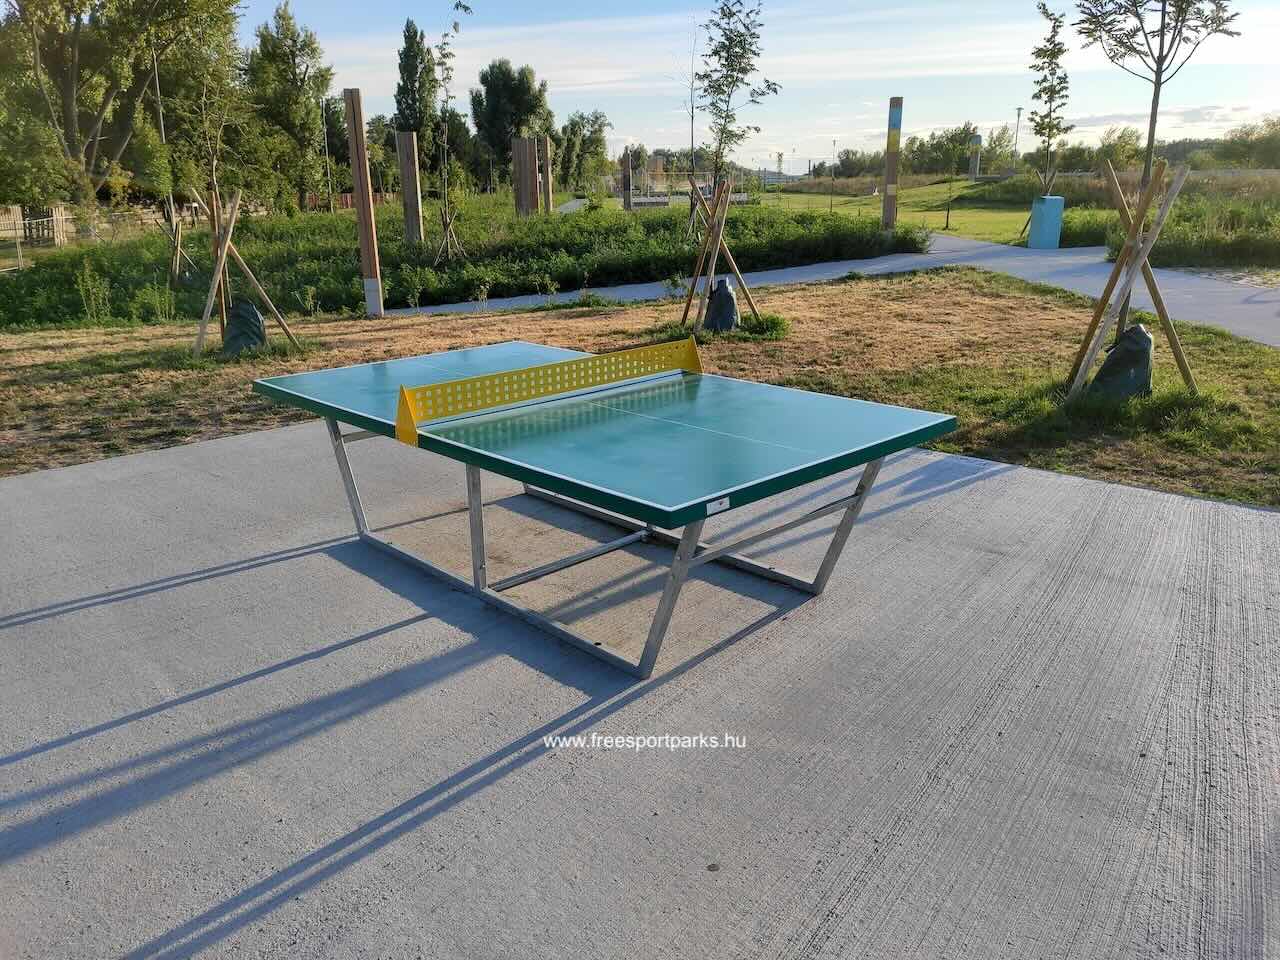 ping-pong asztal beton felületen, Pünkösdfürdő Park - Free Sport Parks Térkép